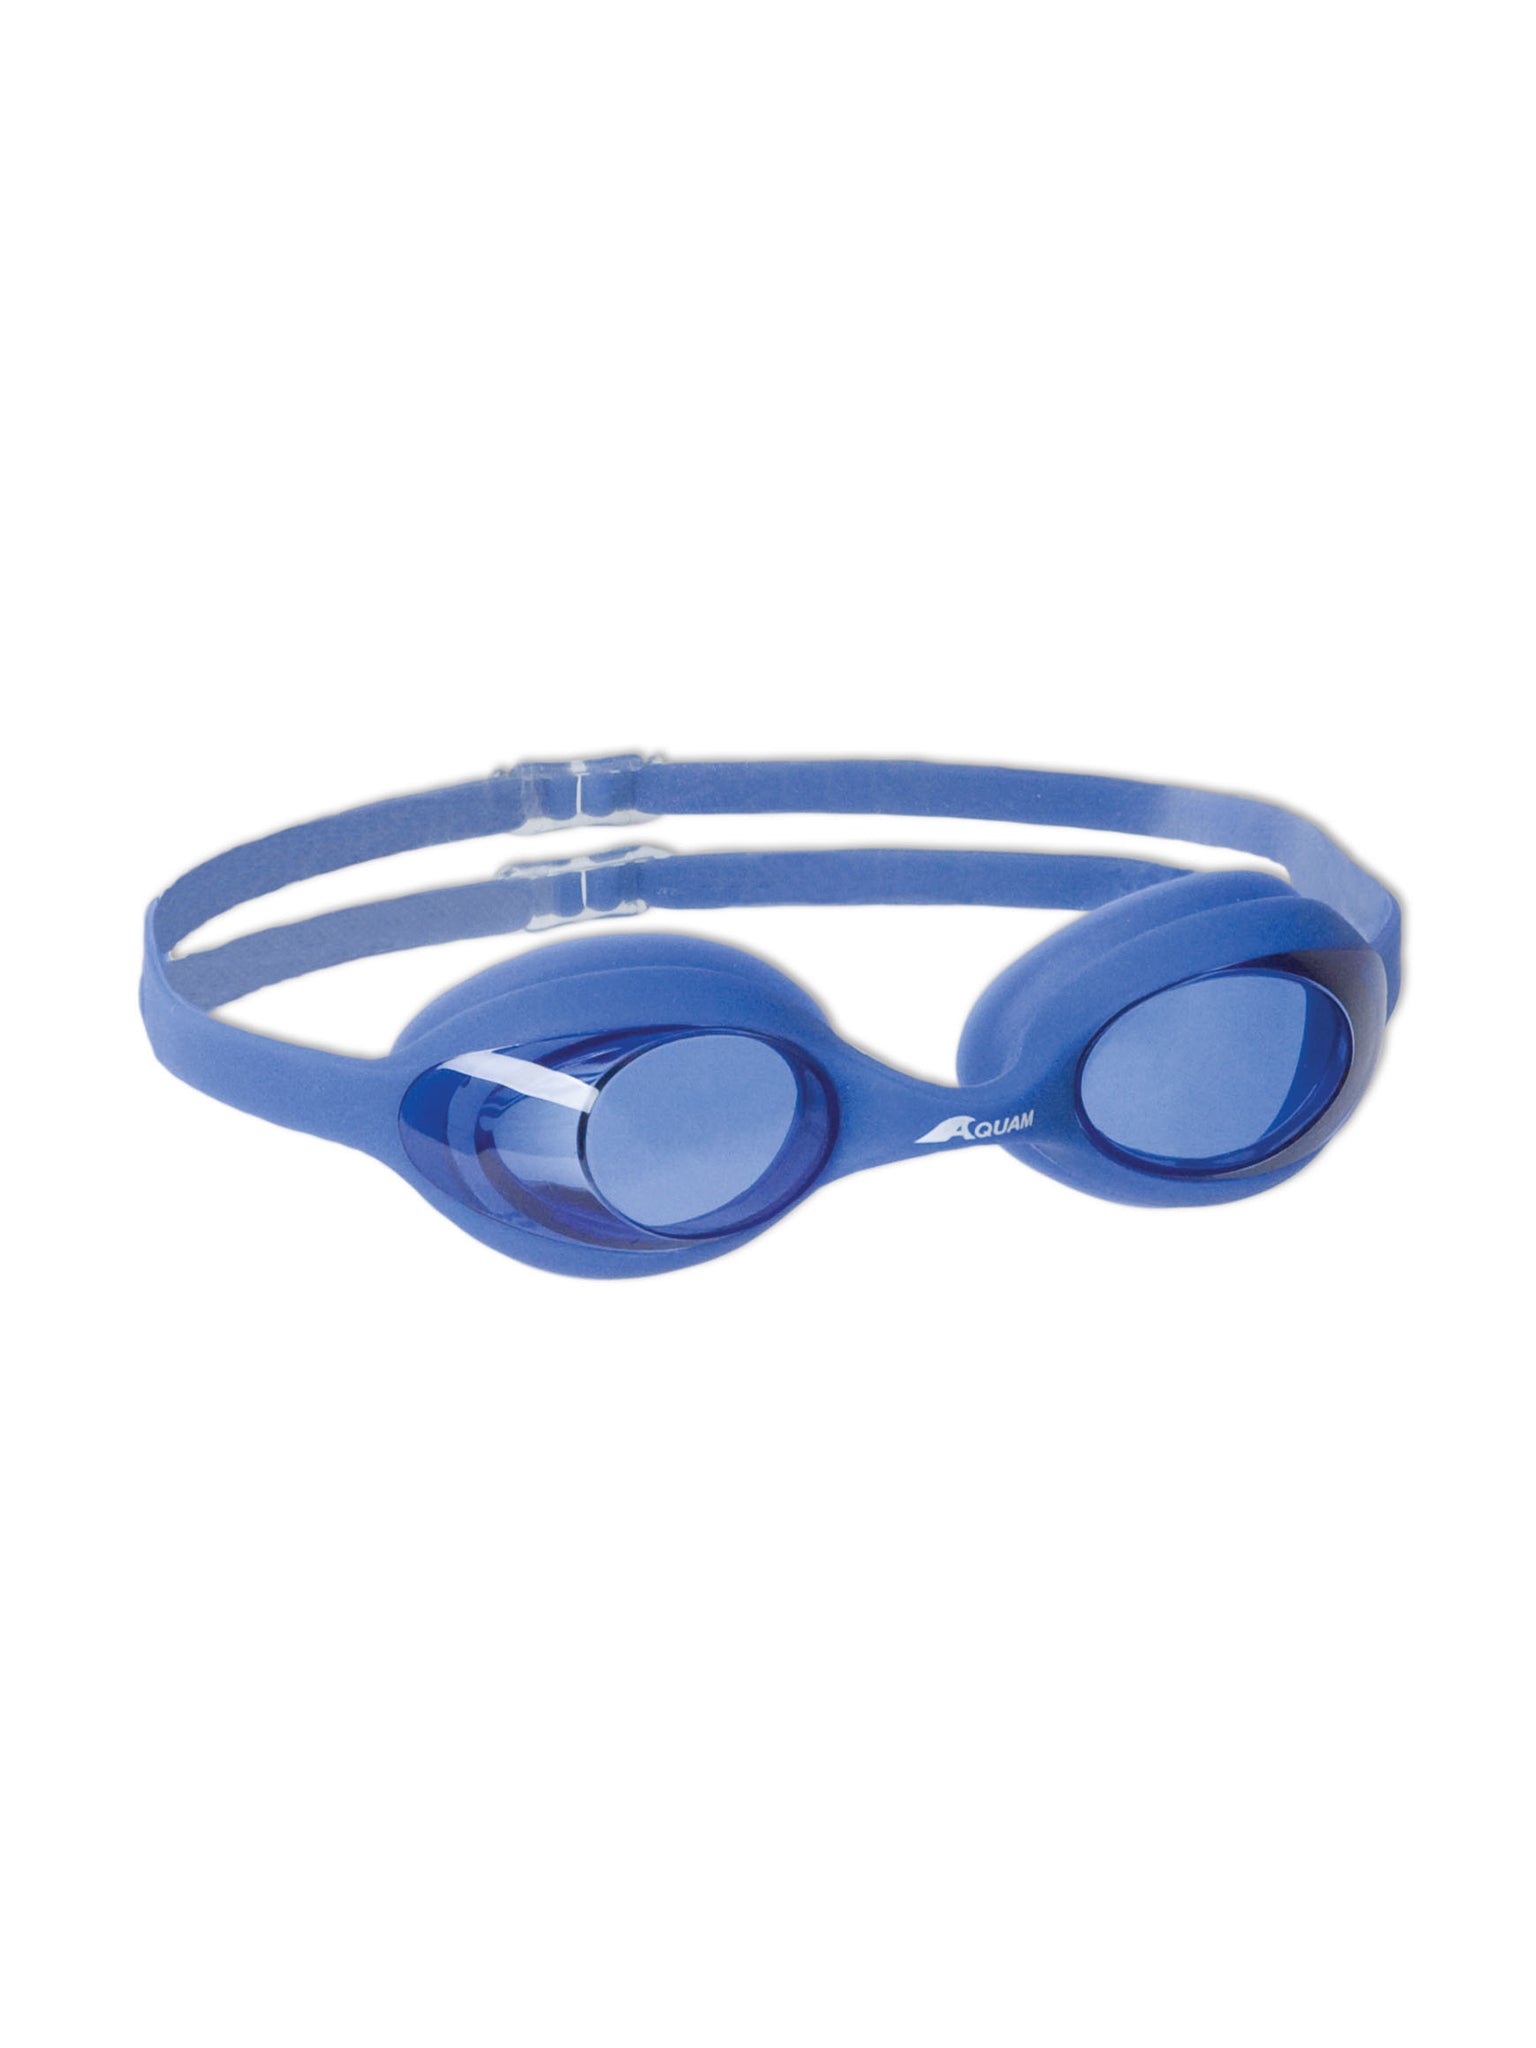 Lunettes de natation Walla pour enfants - Bleu/Bleu